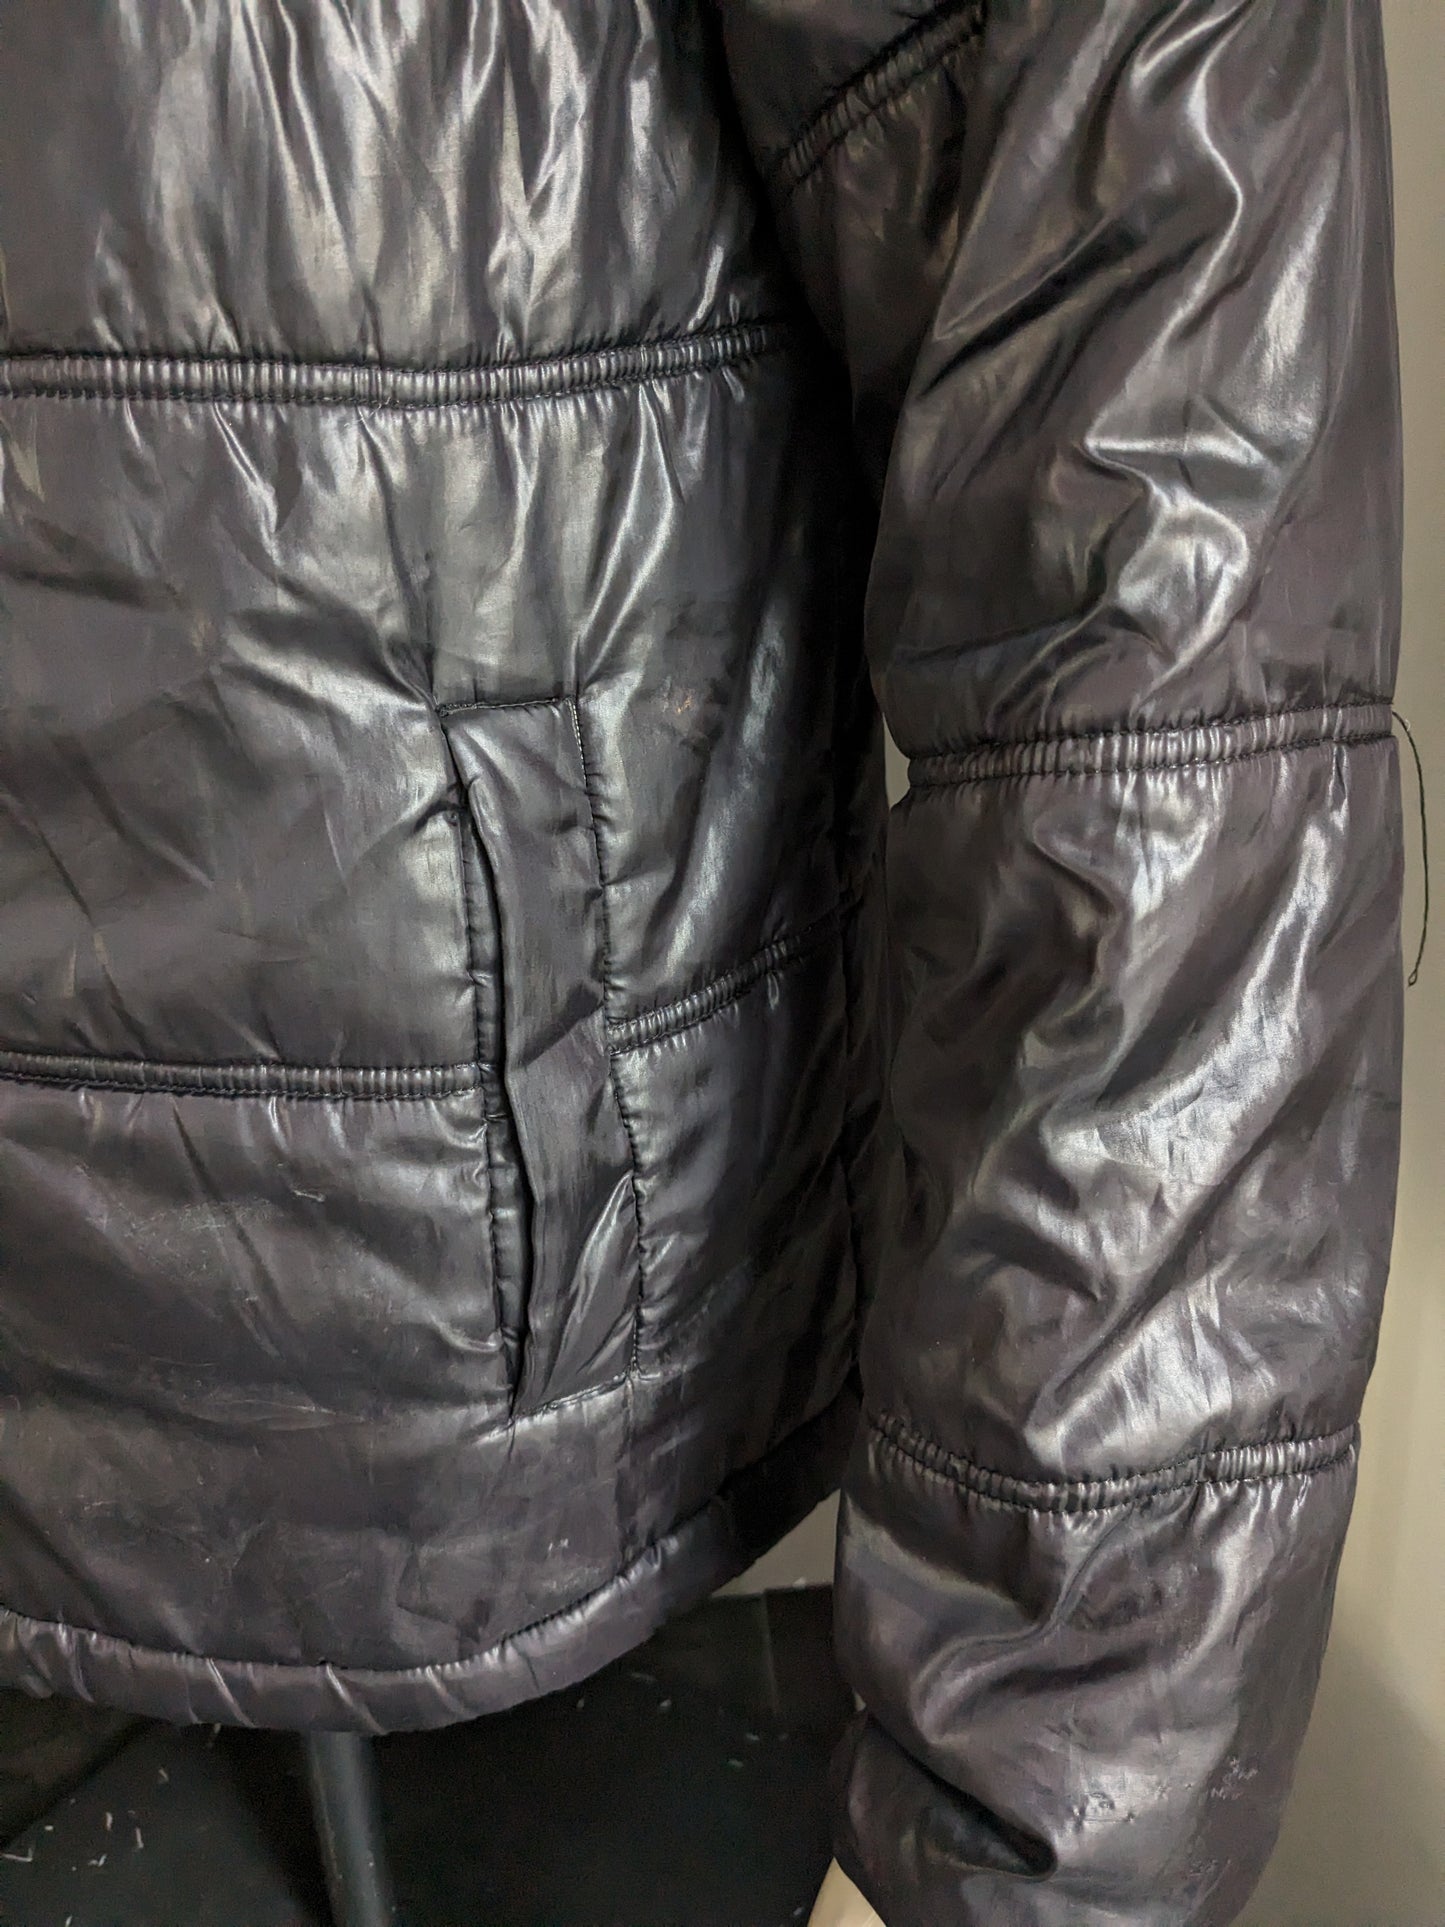 Le Coq Sportif Chaqueta de invierno acolchada con capucha del departamento. Color negro de color gris. Talla M.